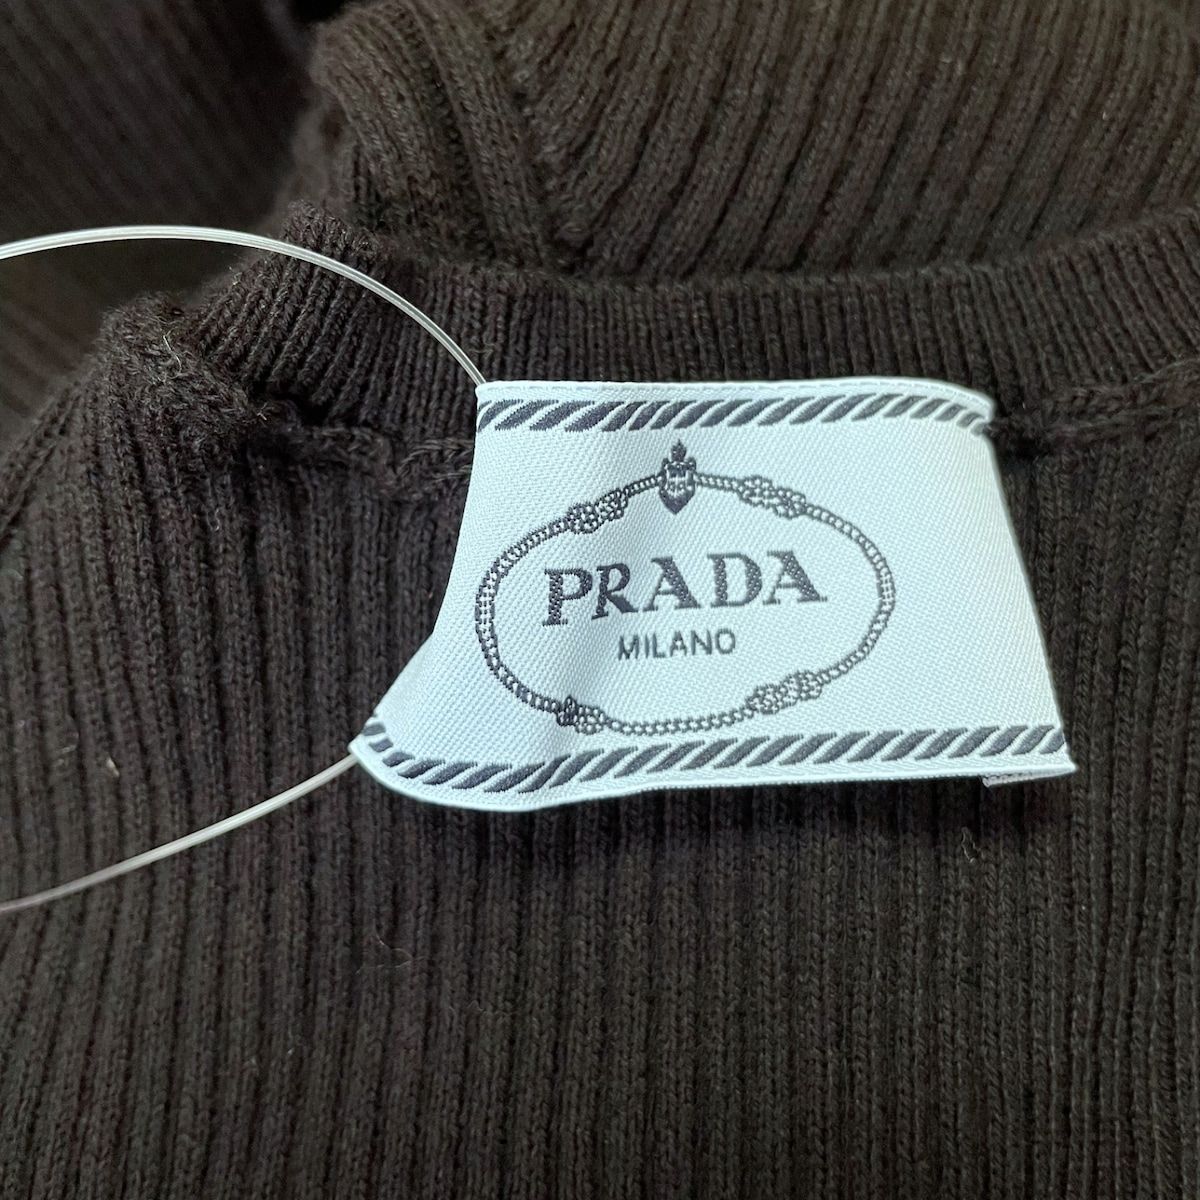 PRADA(プラダ) 長袖セーター サイズ38 S - - トップス